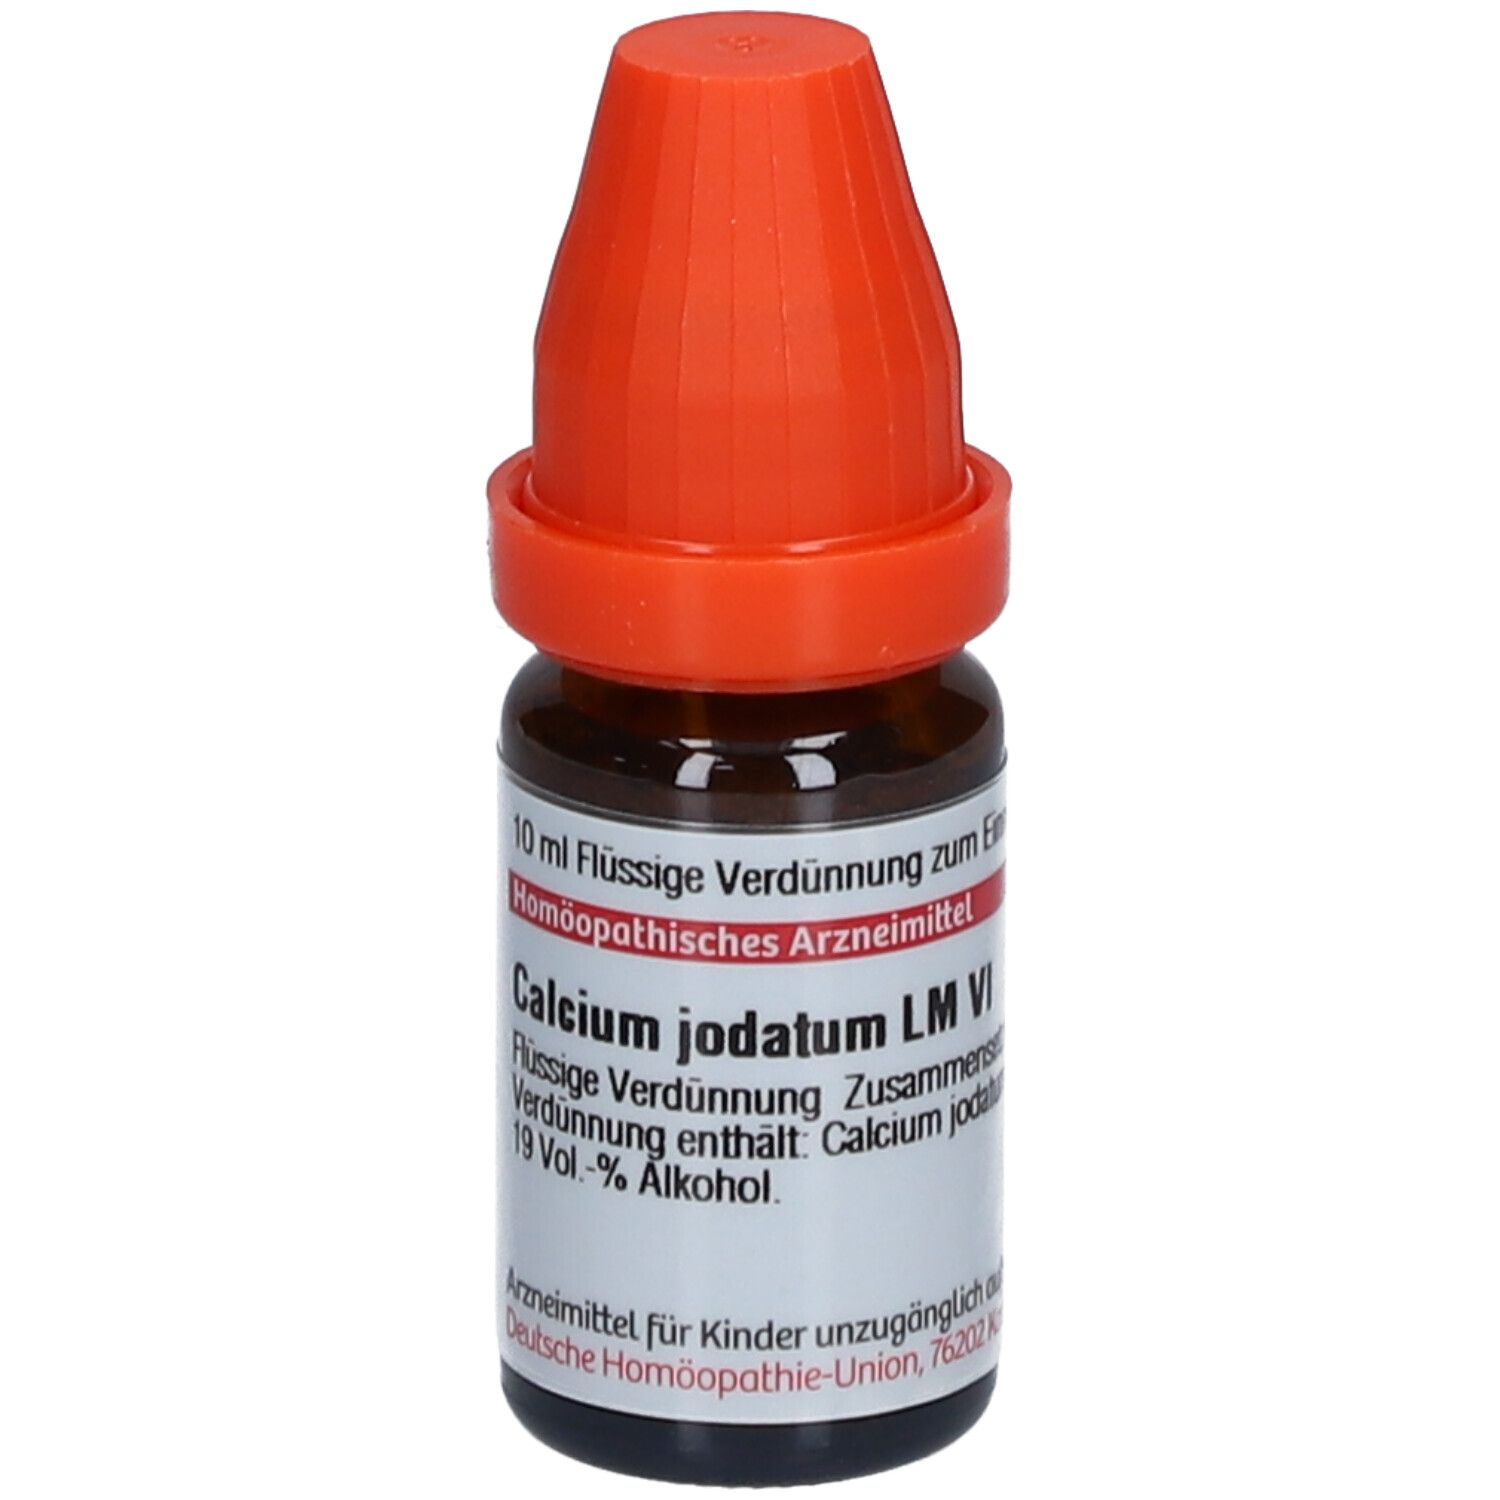 DHU Calcium Jodatum LM VI